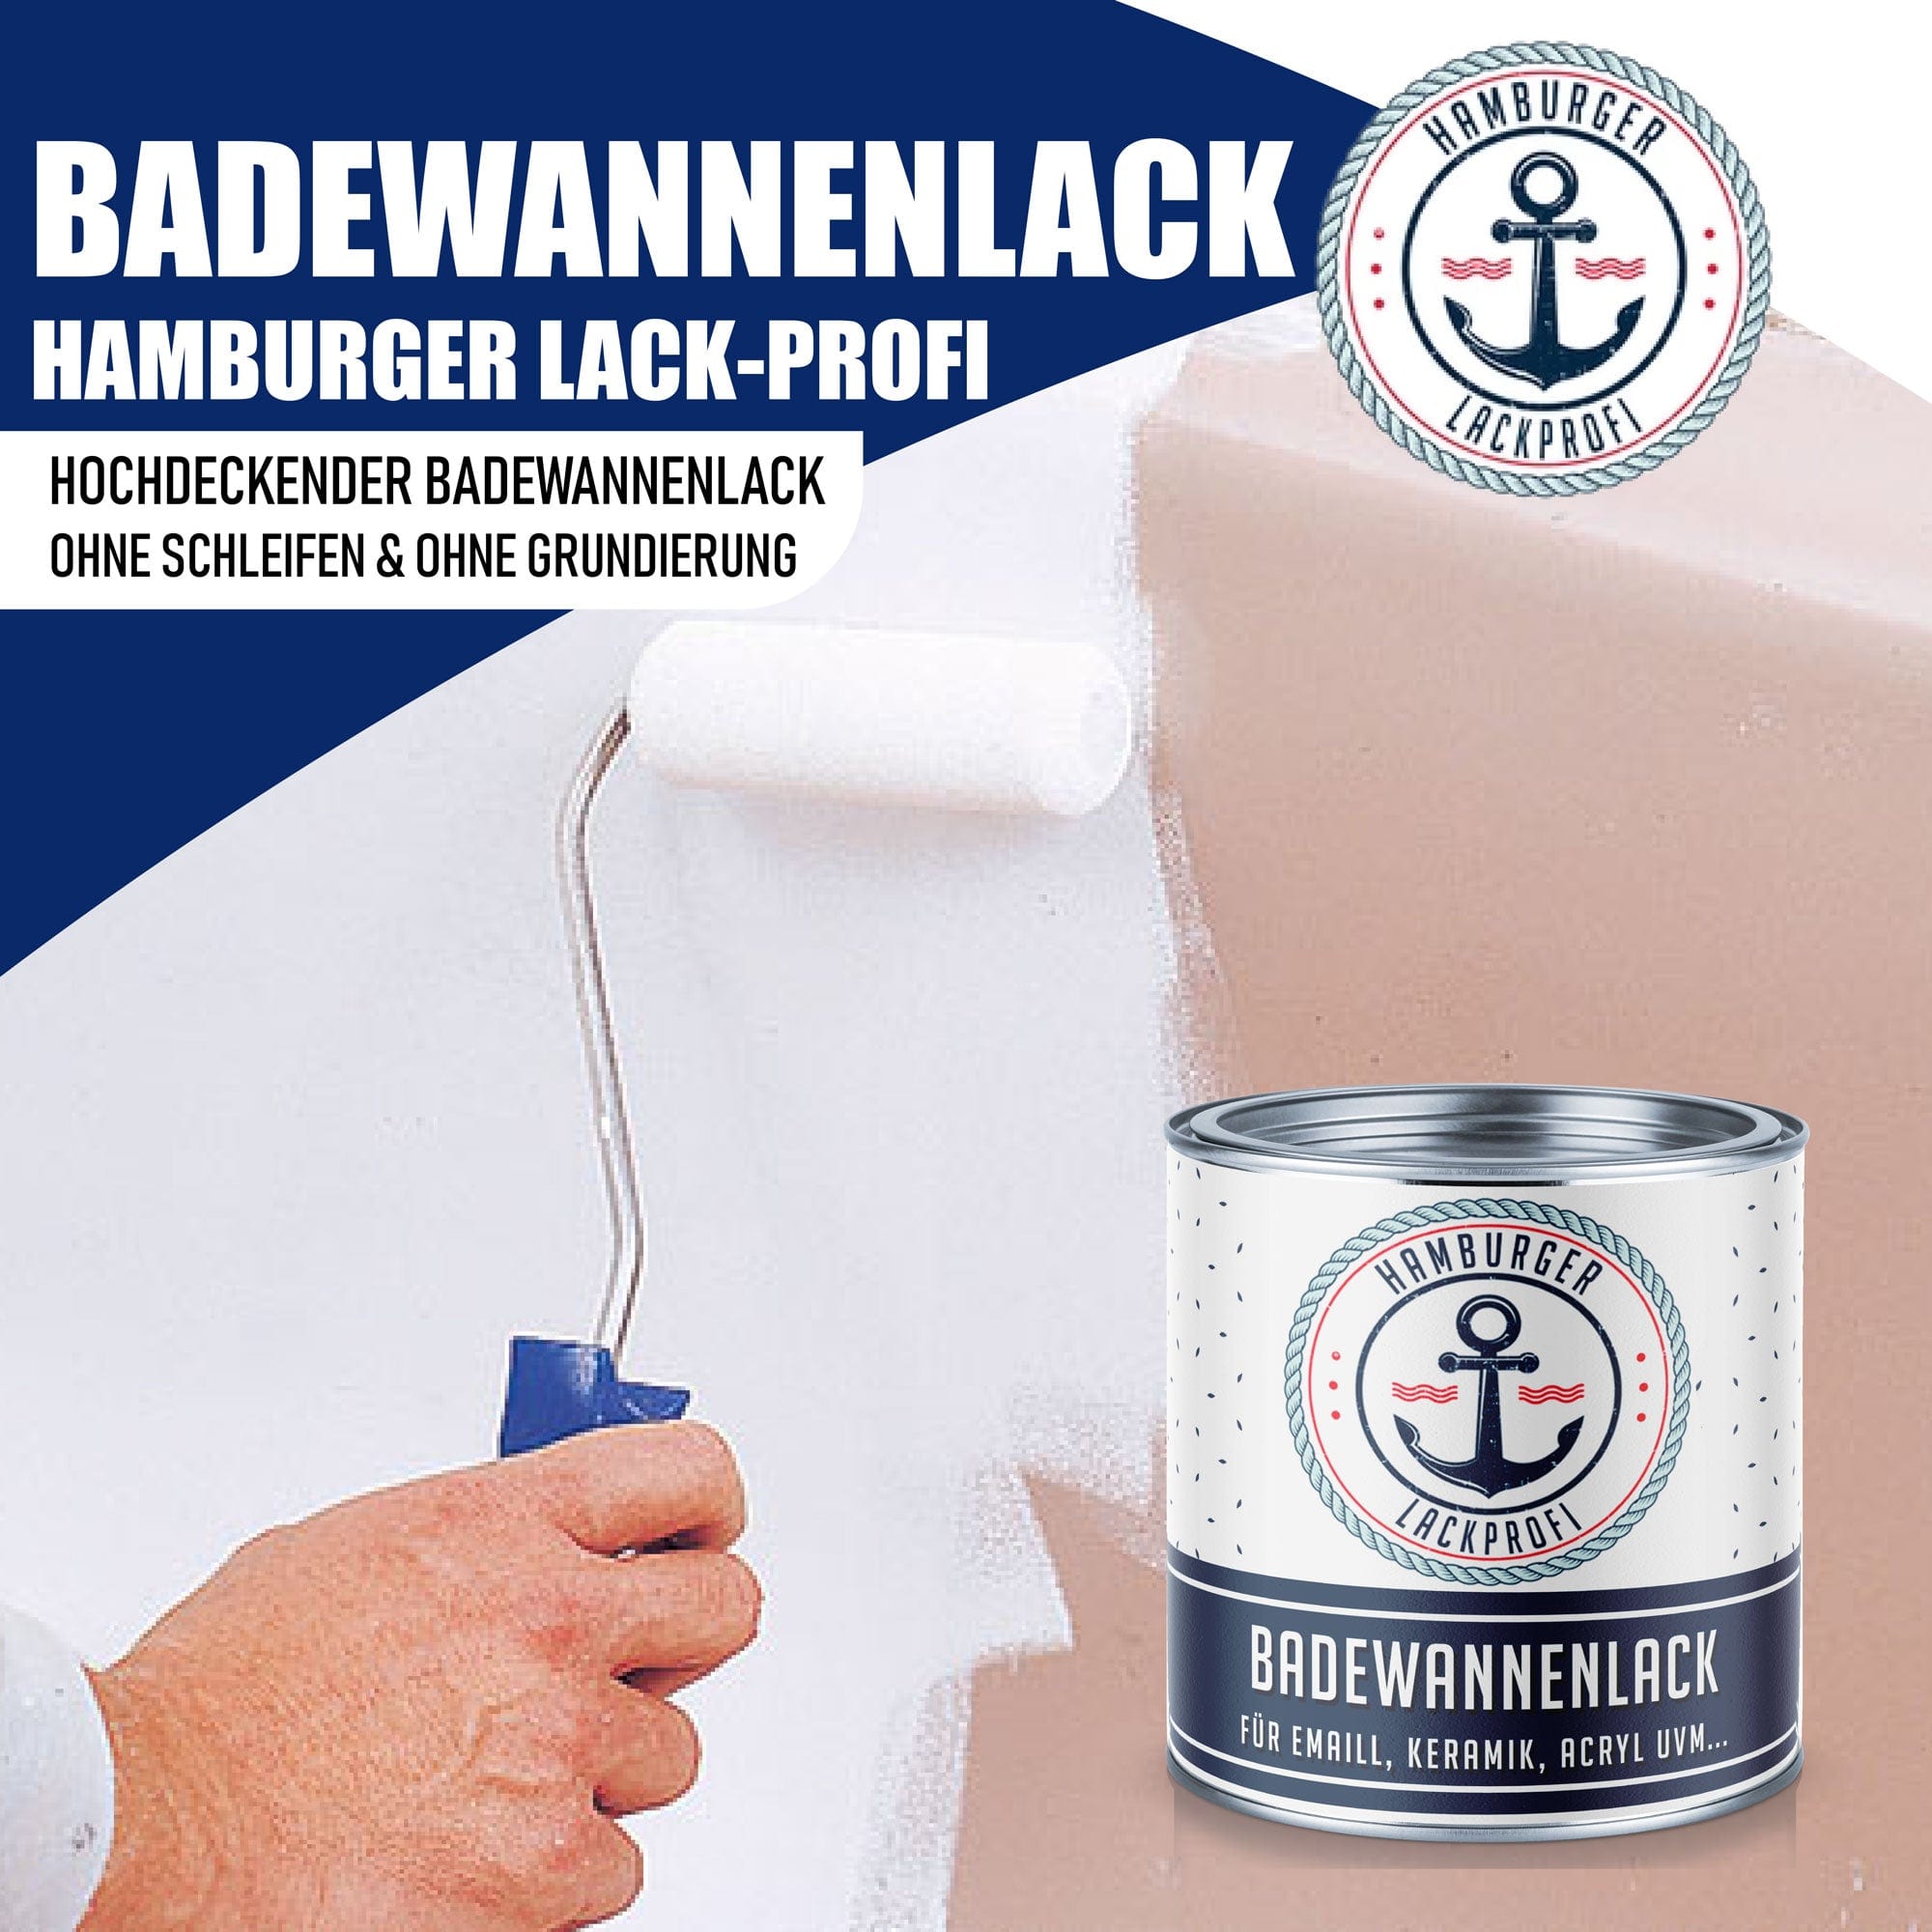 Hamburger Lack-Profi Badewannenlack Hamburger Lack-Profi 2K Badewannenlack - Glänzend / Seidenmatt / Matt